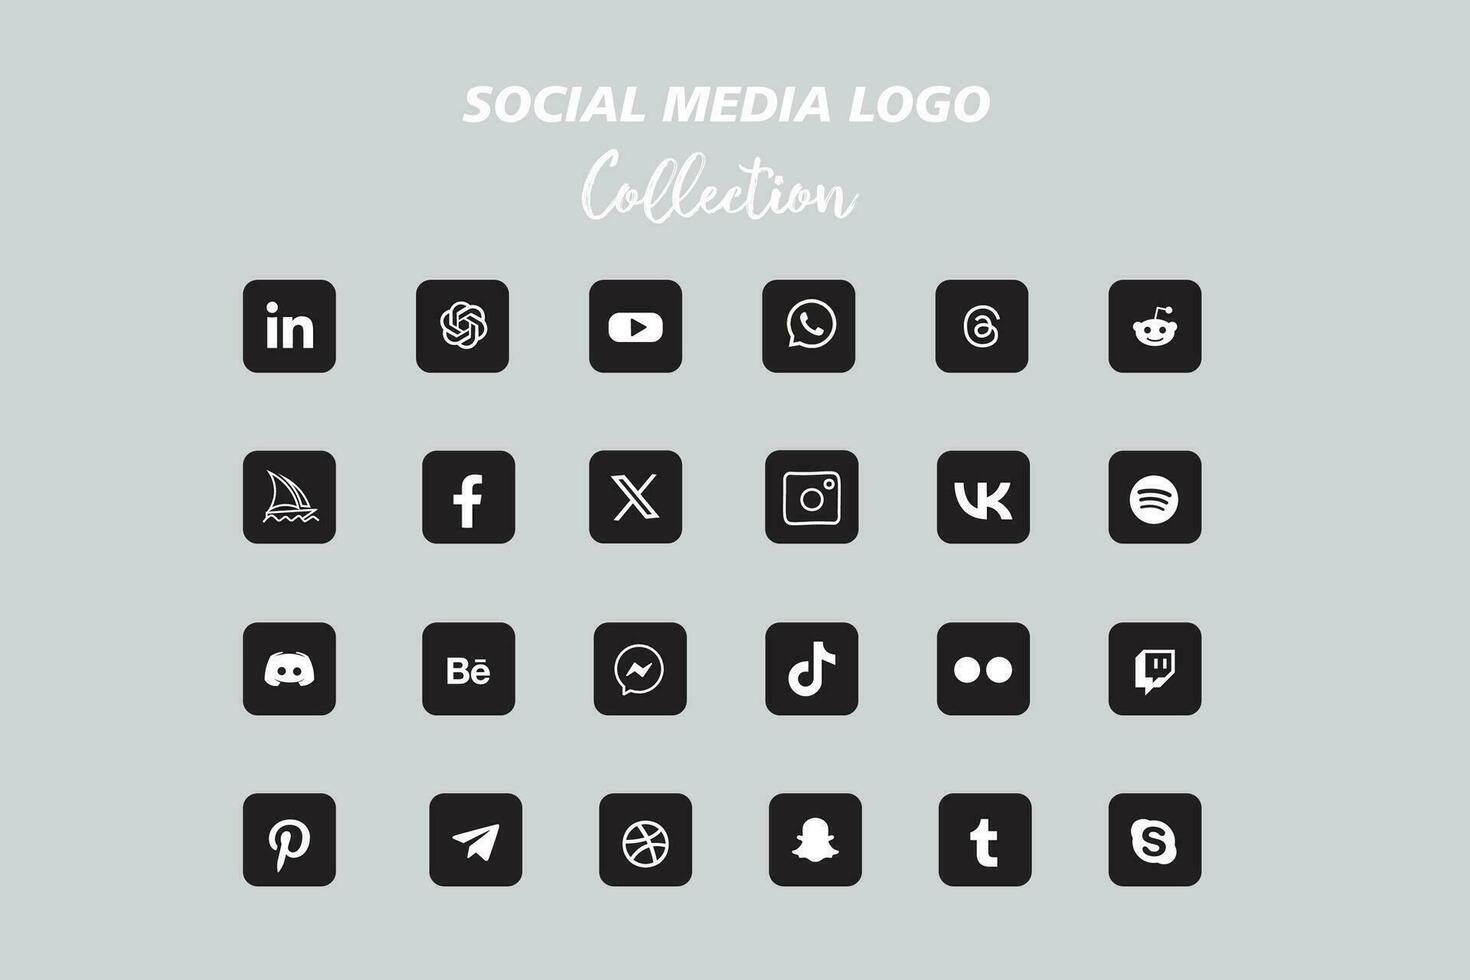 popular social rede logotipo ícone coleção vetor